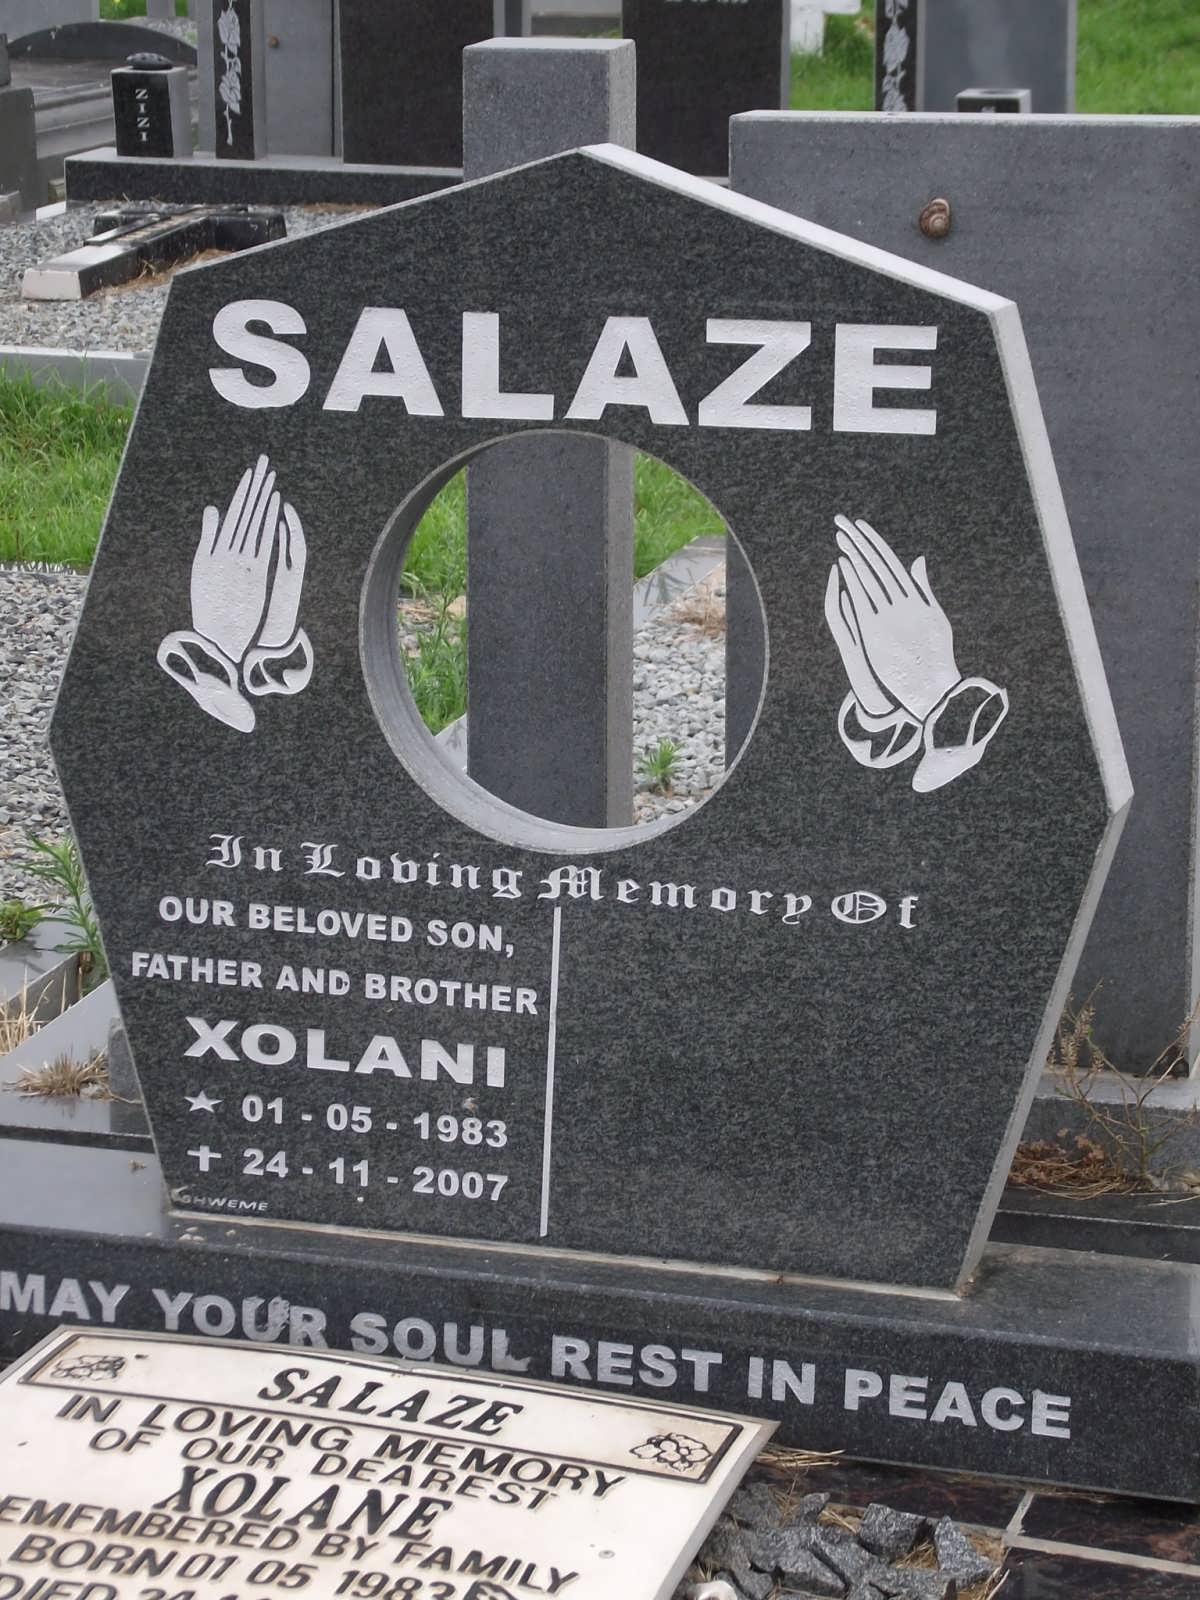 SALAZE Xolani 1983-2007